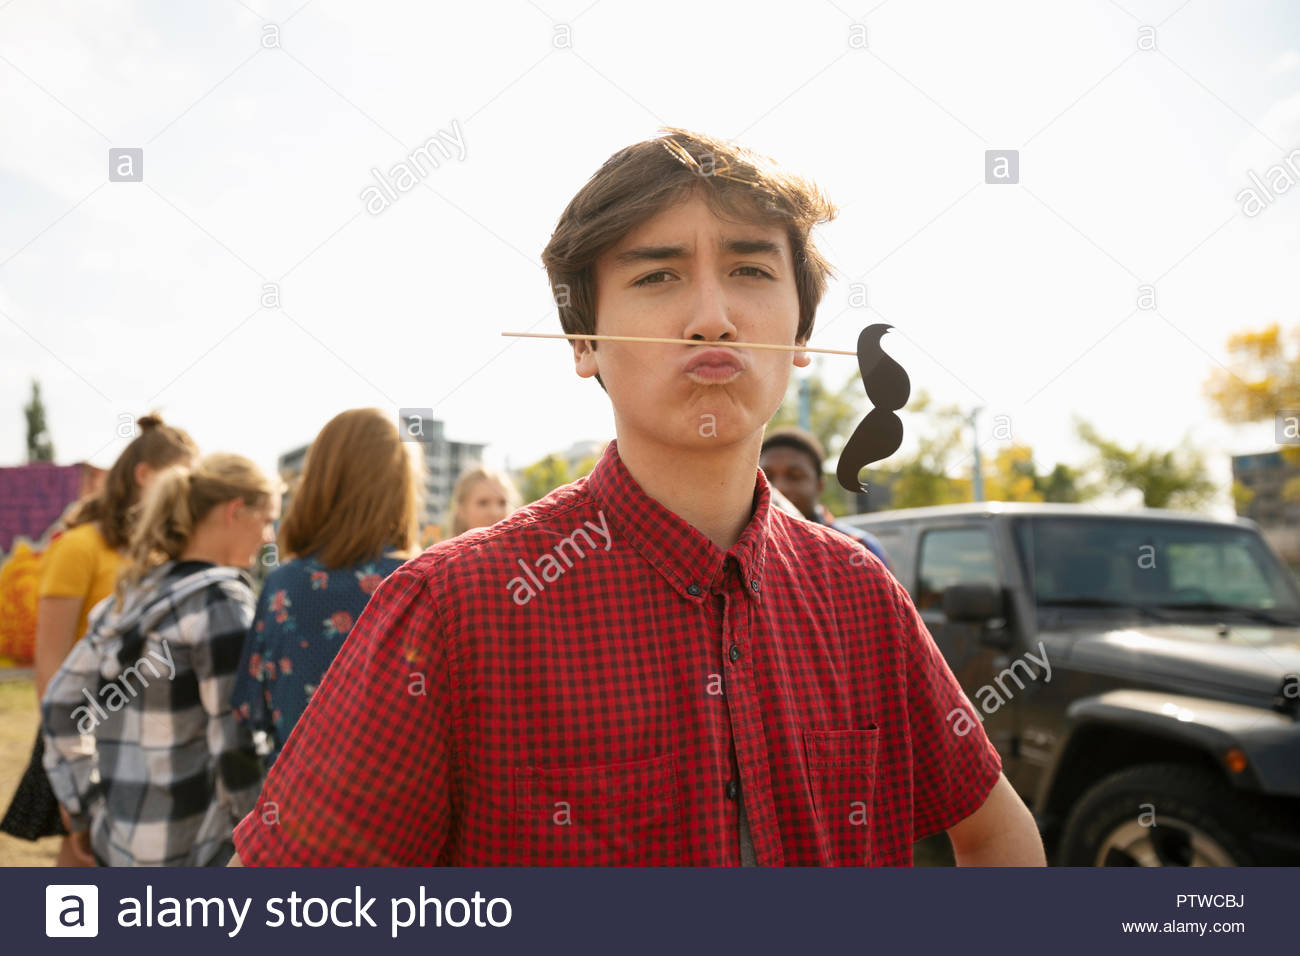 Retrato adolescente juguetón con bigote prop Foto de stock